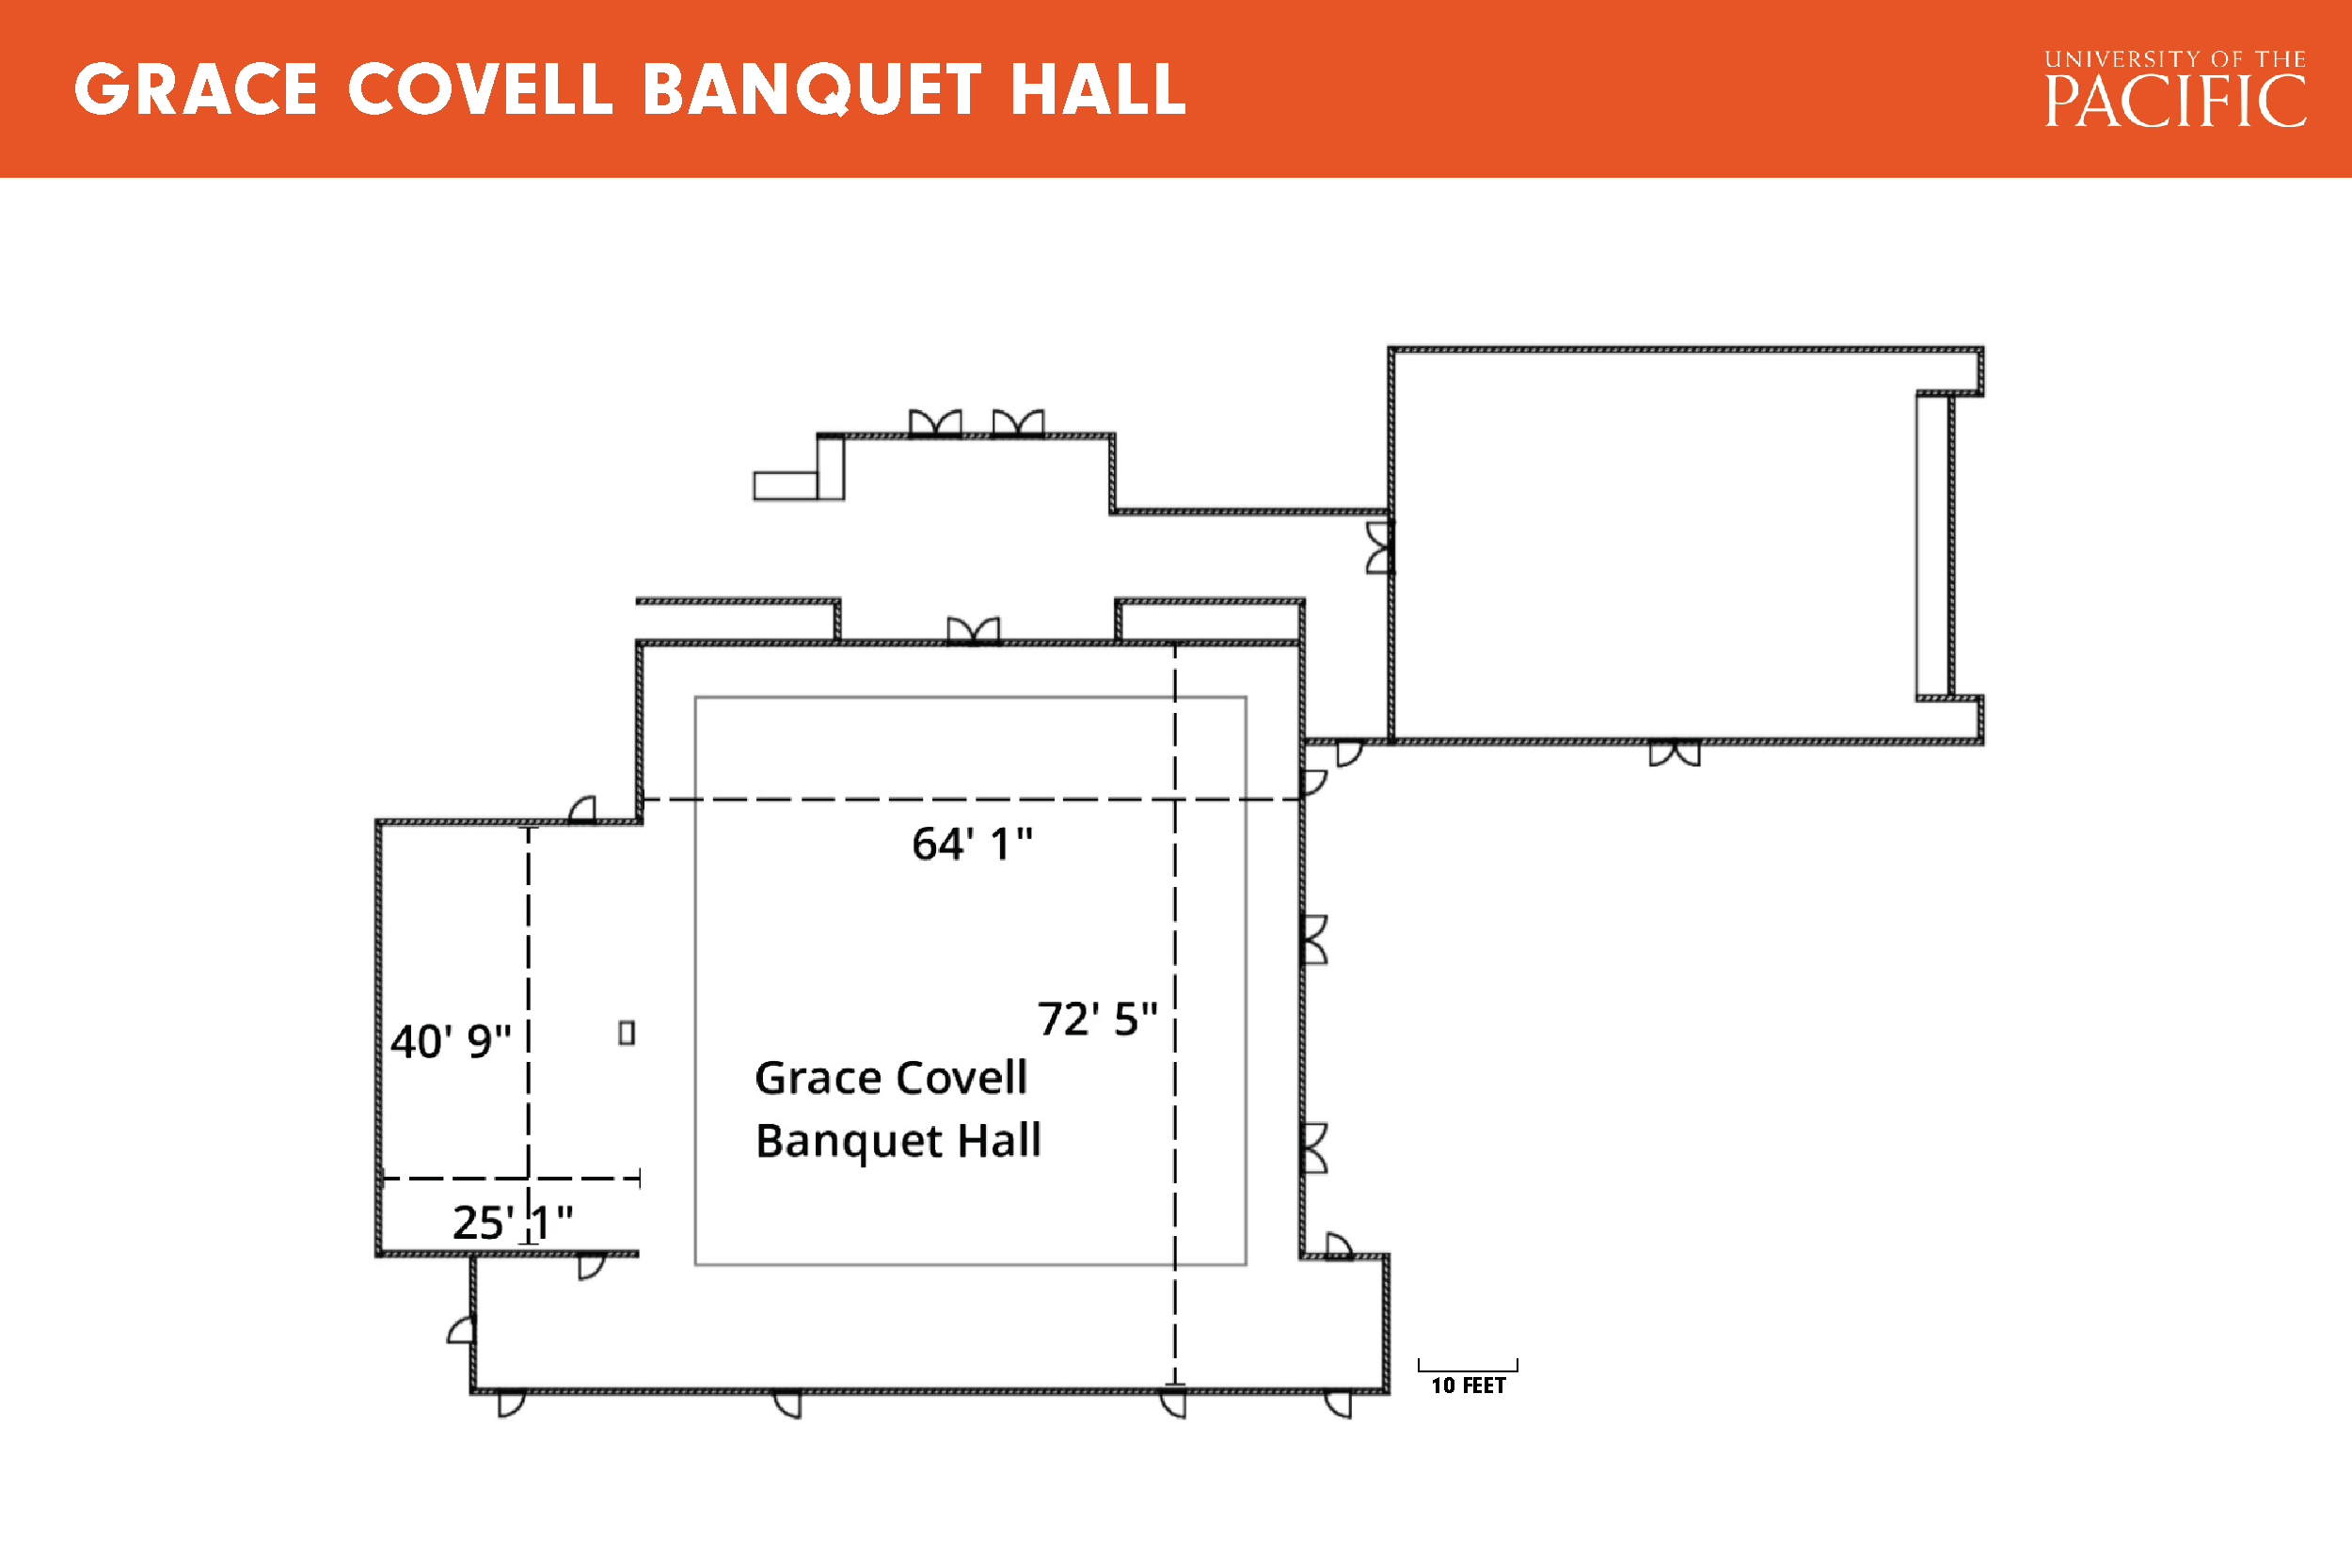 Grace Covell Banquet Hall floor plan